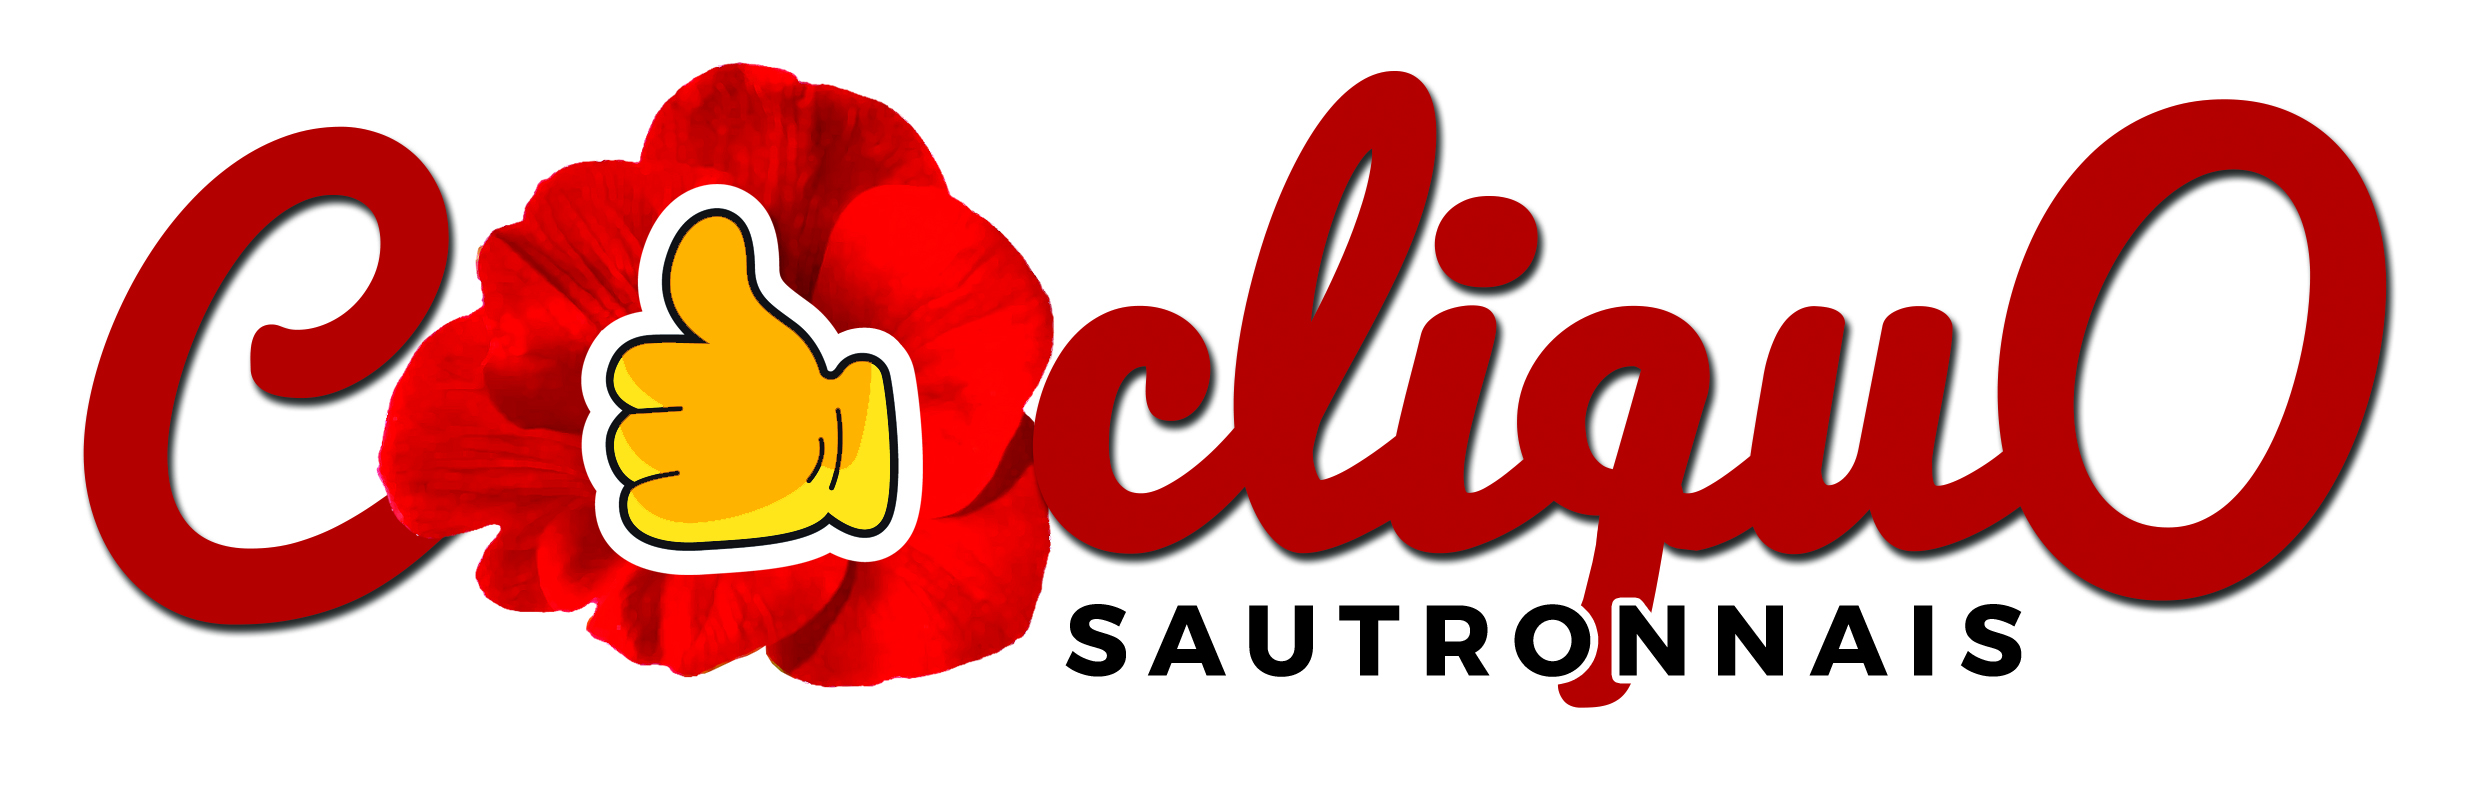 COCLIQUO logo Sautron.jpg